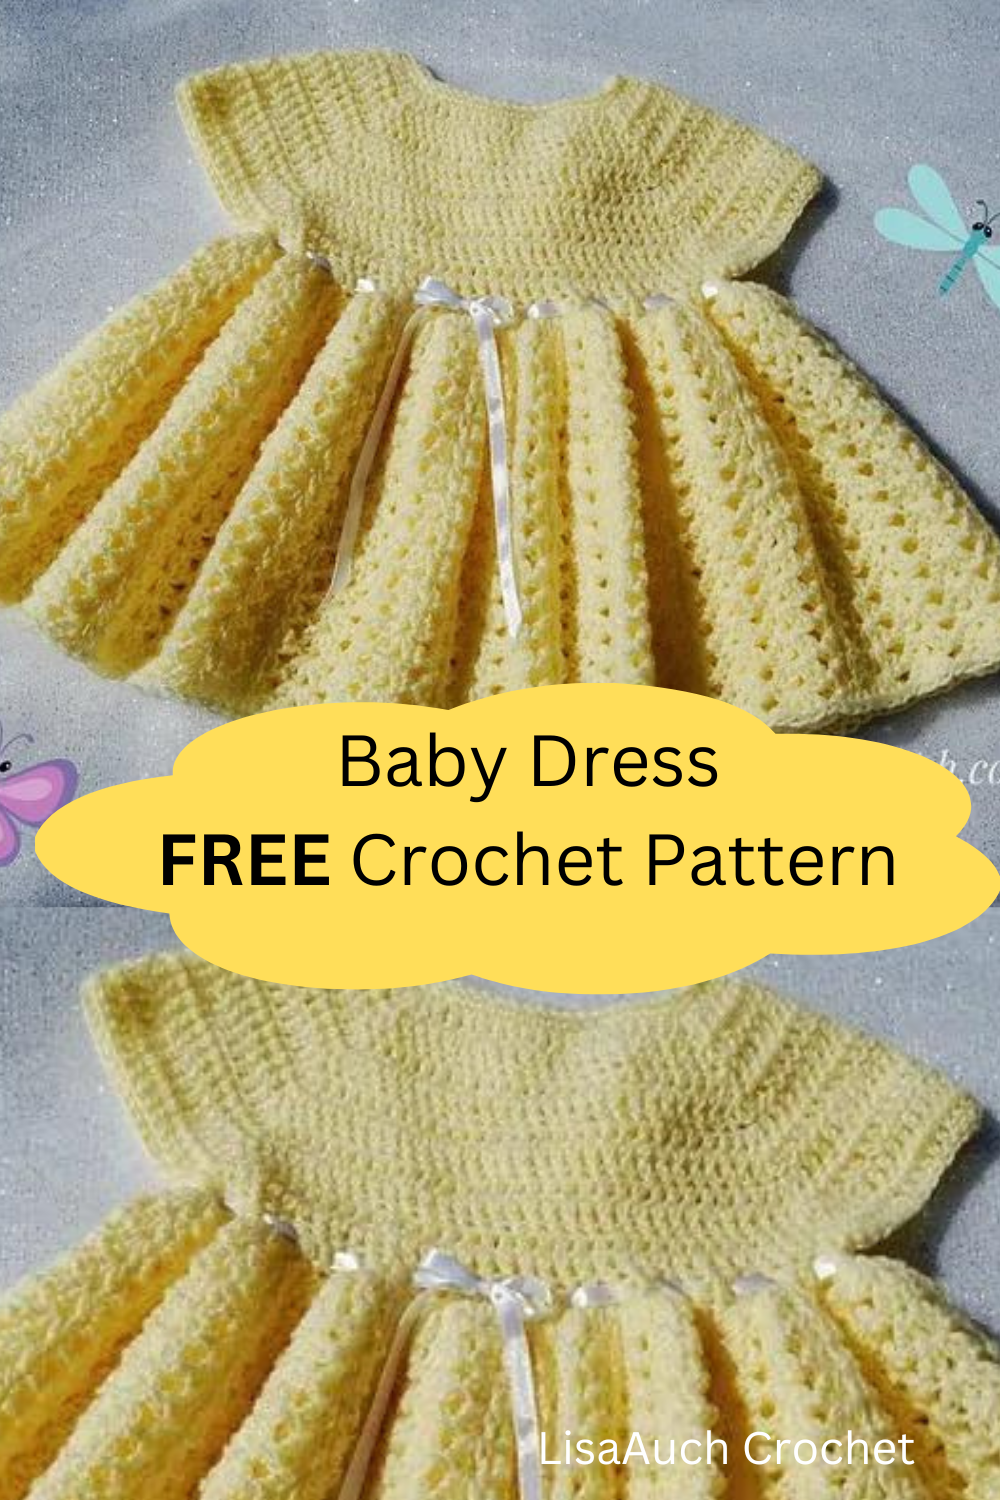 baby dress crochet pattern free - summer crochet ideas - summer crochet dress for baby